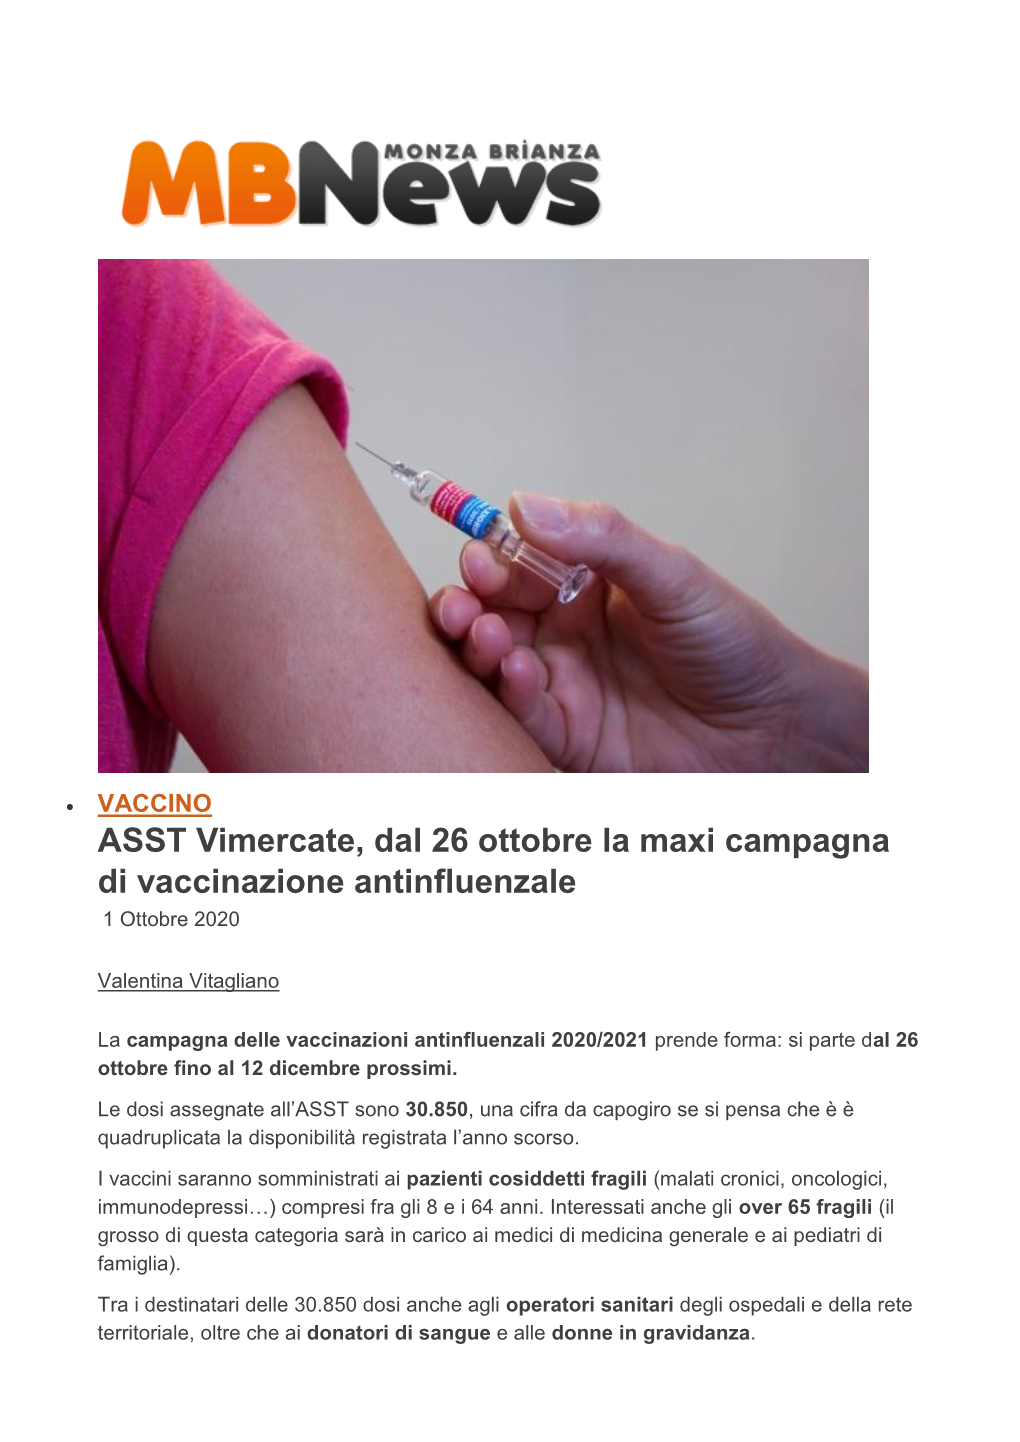 ASST Vimercate, Dal 26 Ottobre La Maxi Campagna Di Vaccinazione Antinfluenzale 1 Ottobre 2020